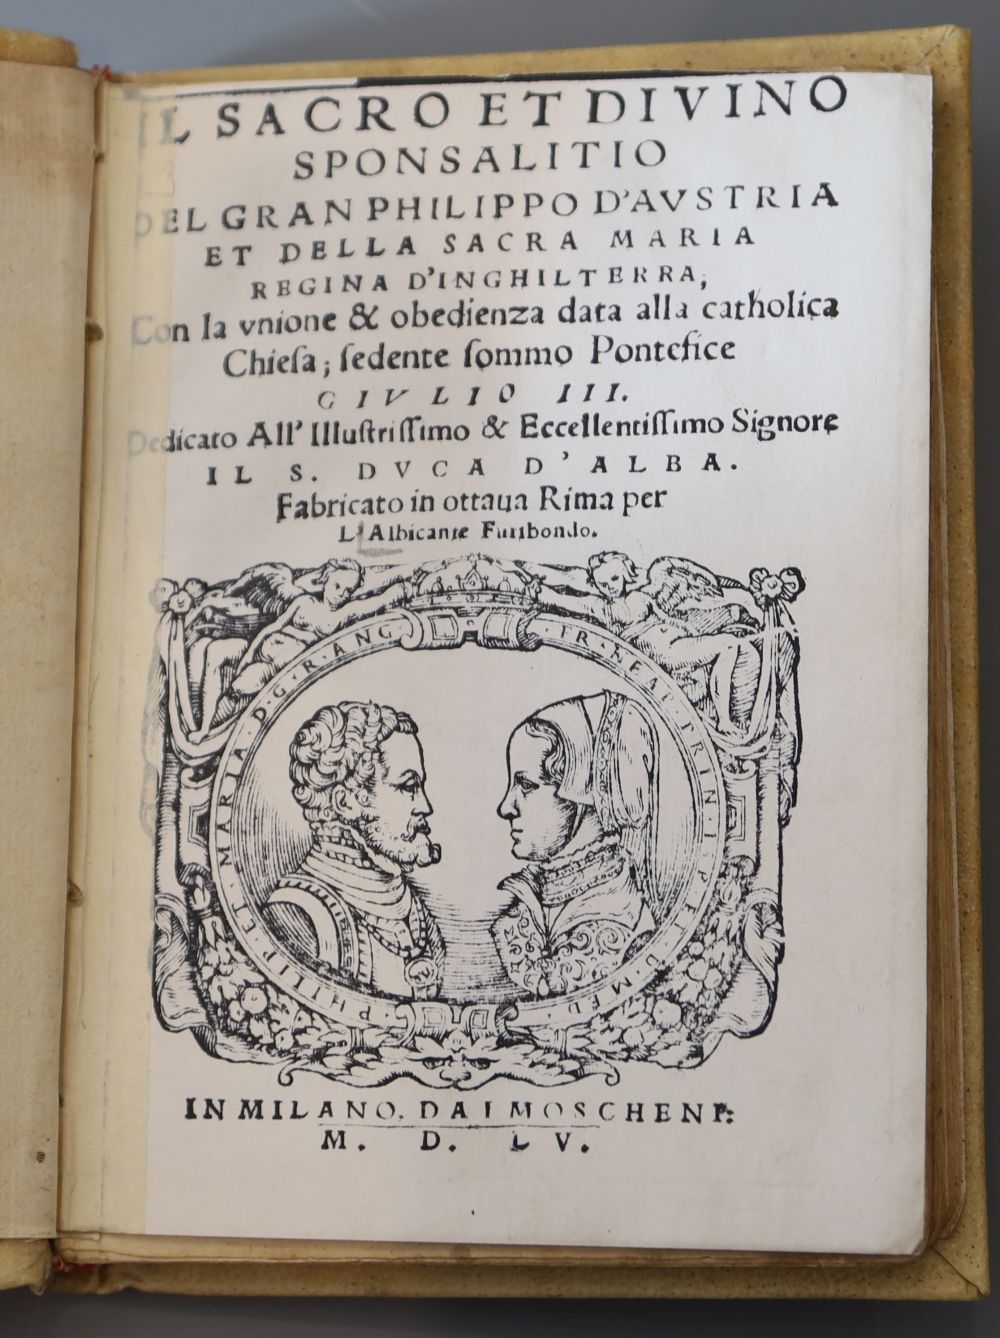 Albicanti, Giovanni Alberto - Sacro et divino sponsalitio, vellum, 12mo, photocopy title page and page 8, Moscheni, Milano, 1550